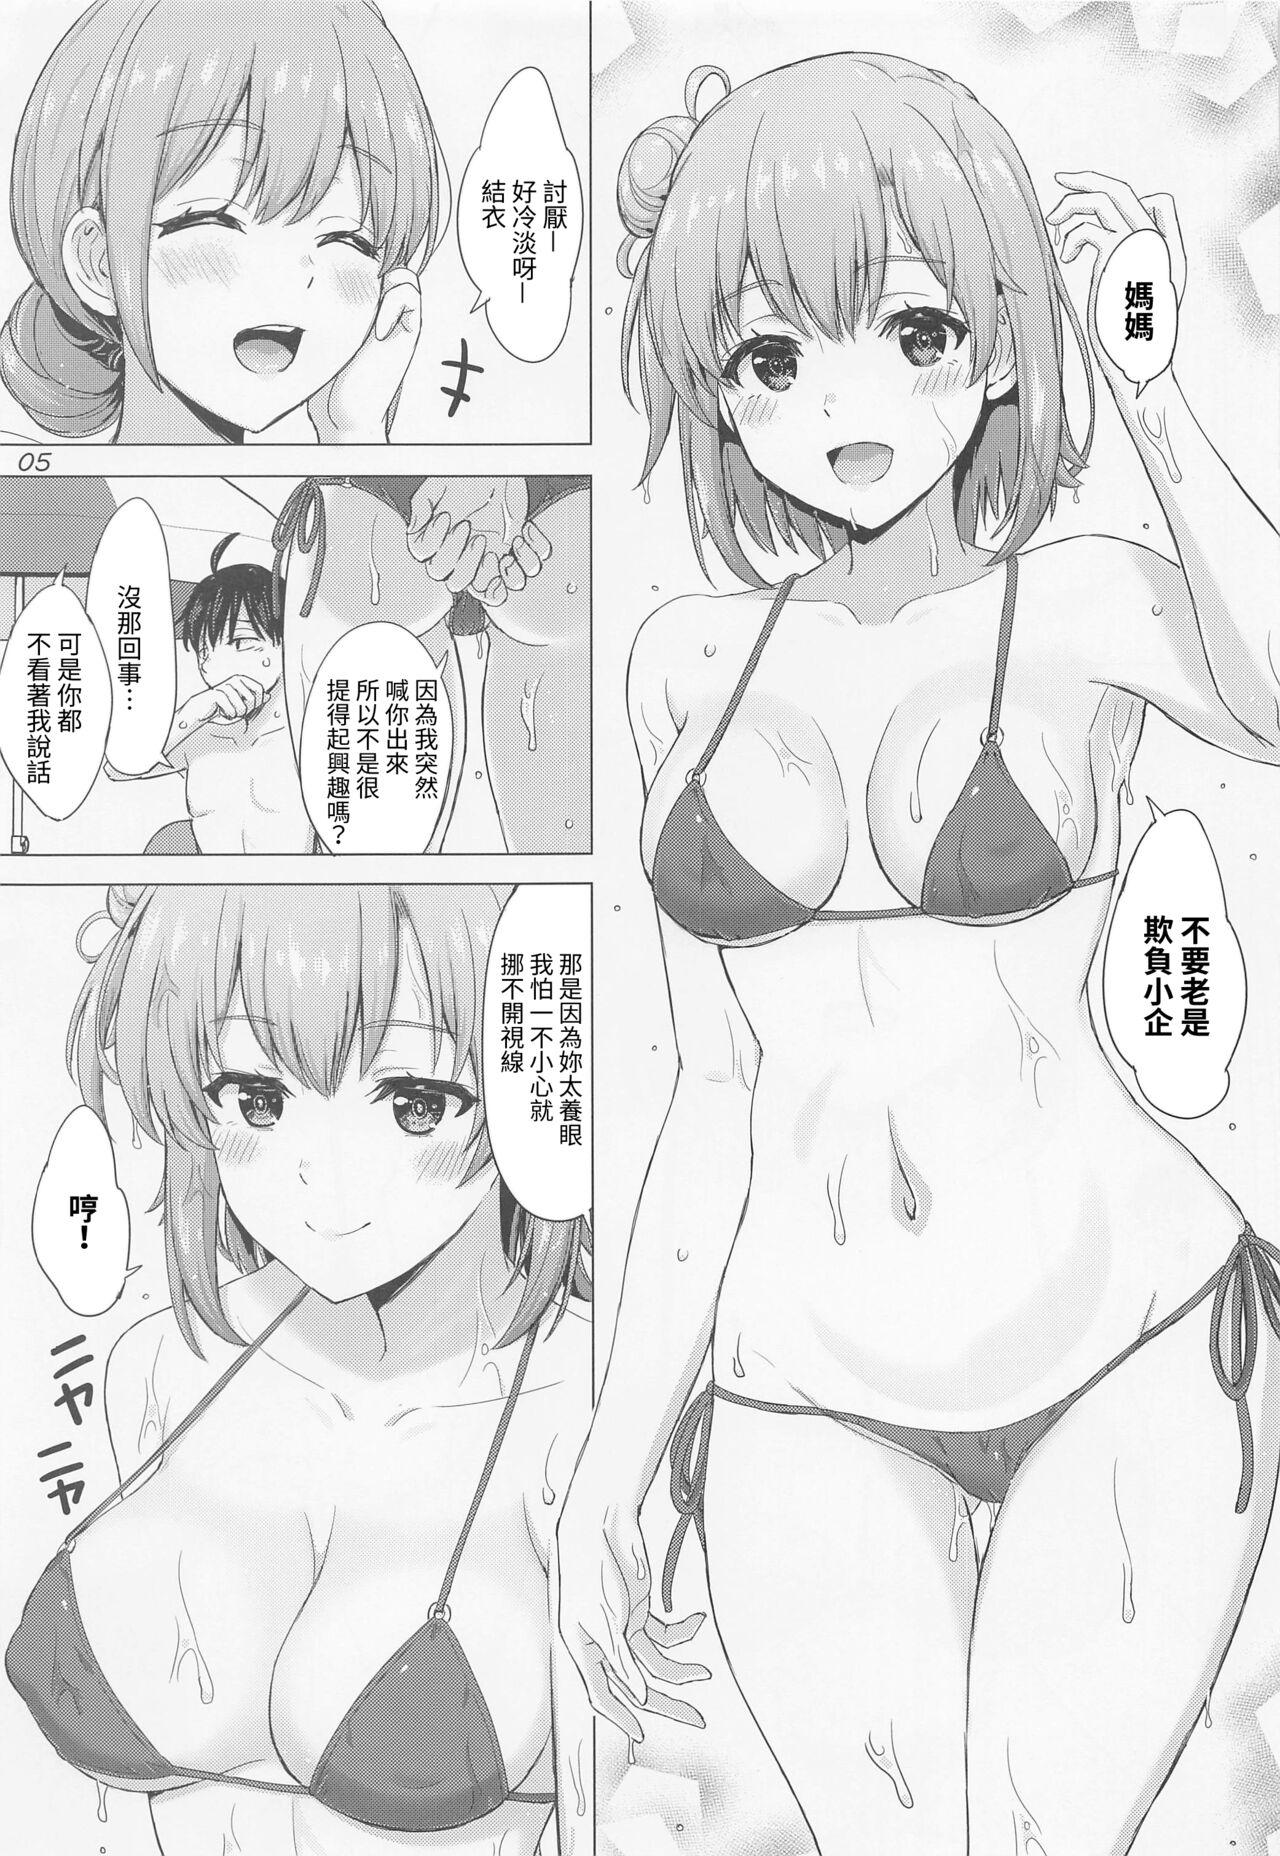 Women Sucking Dicks Jounetsuteki na Natsu no Resort o Yuigahama Oyako to. - Yahari ore no seishun love come wa machigatteiru Flaquita - Page 4